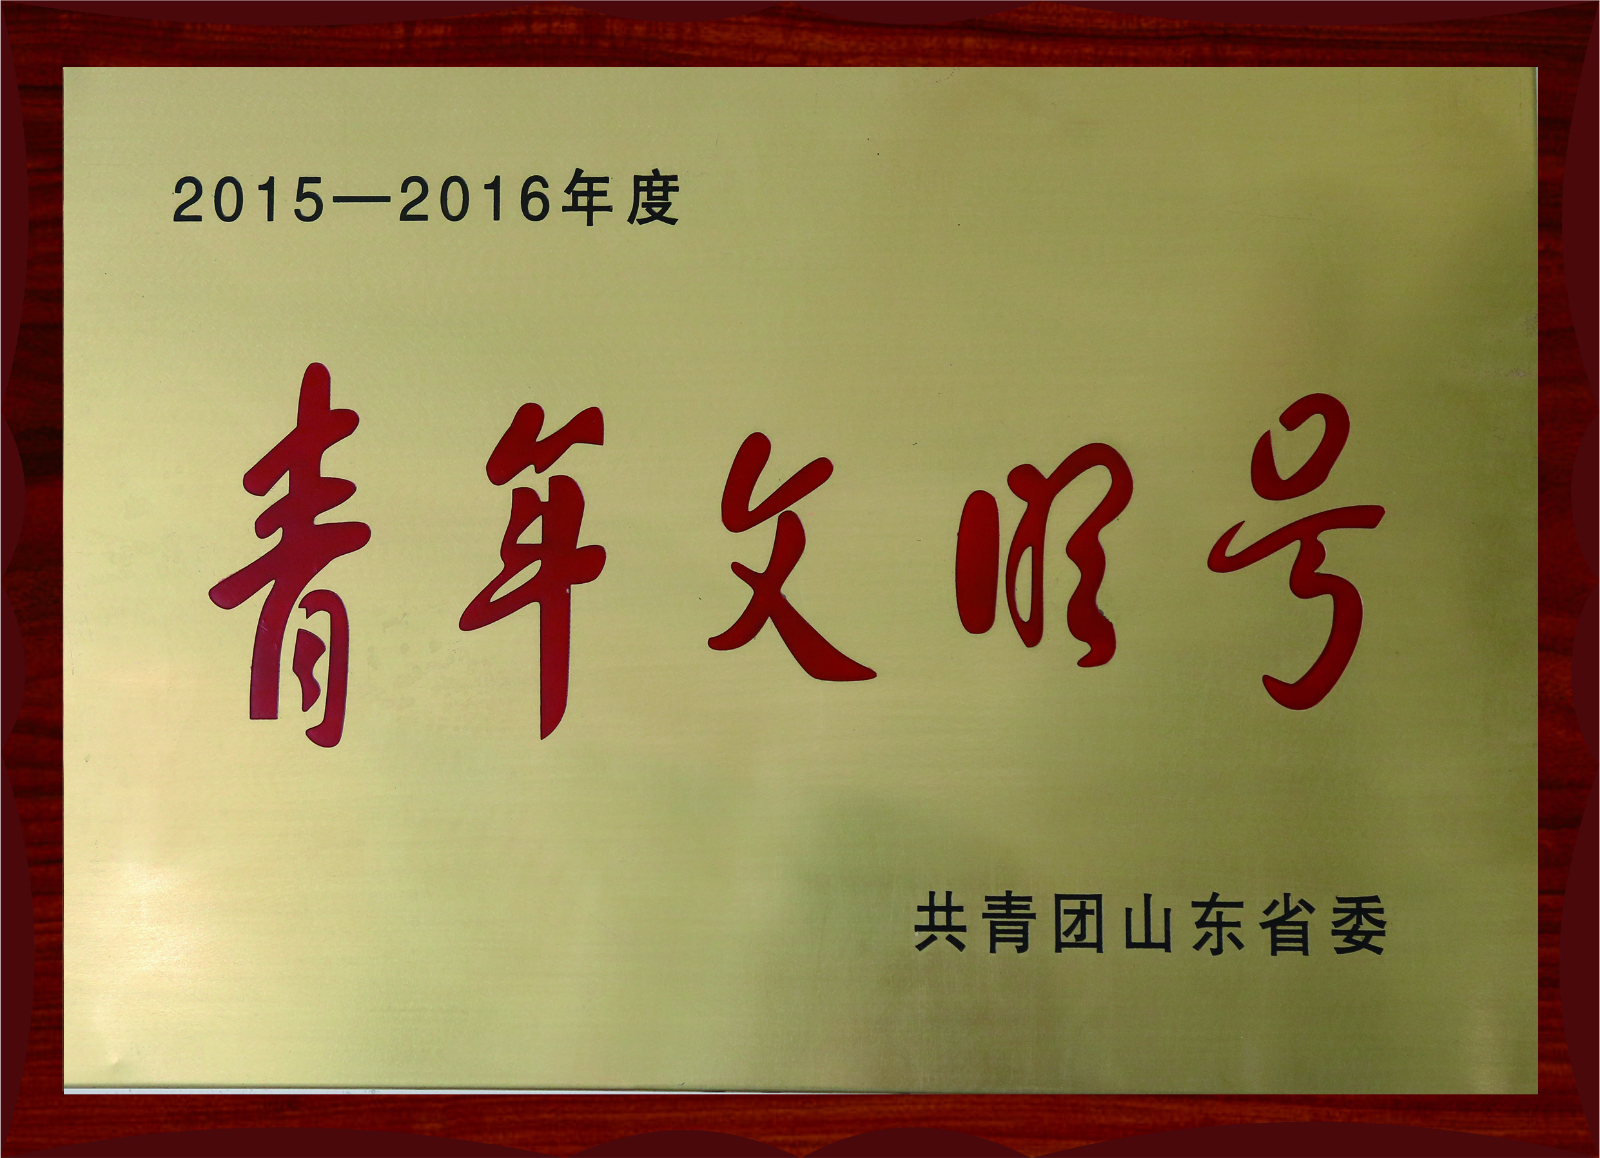 2015-2016年度青年文明號